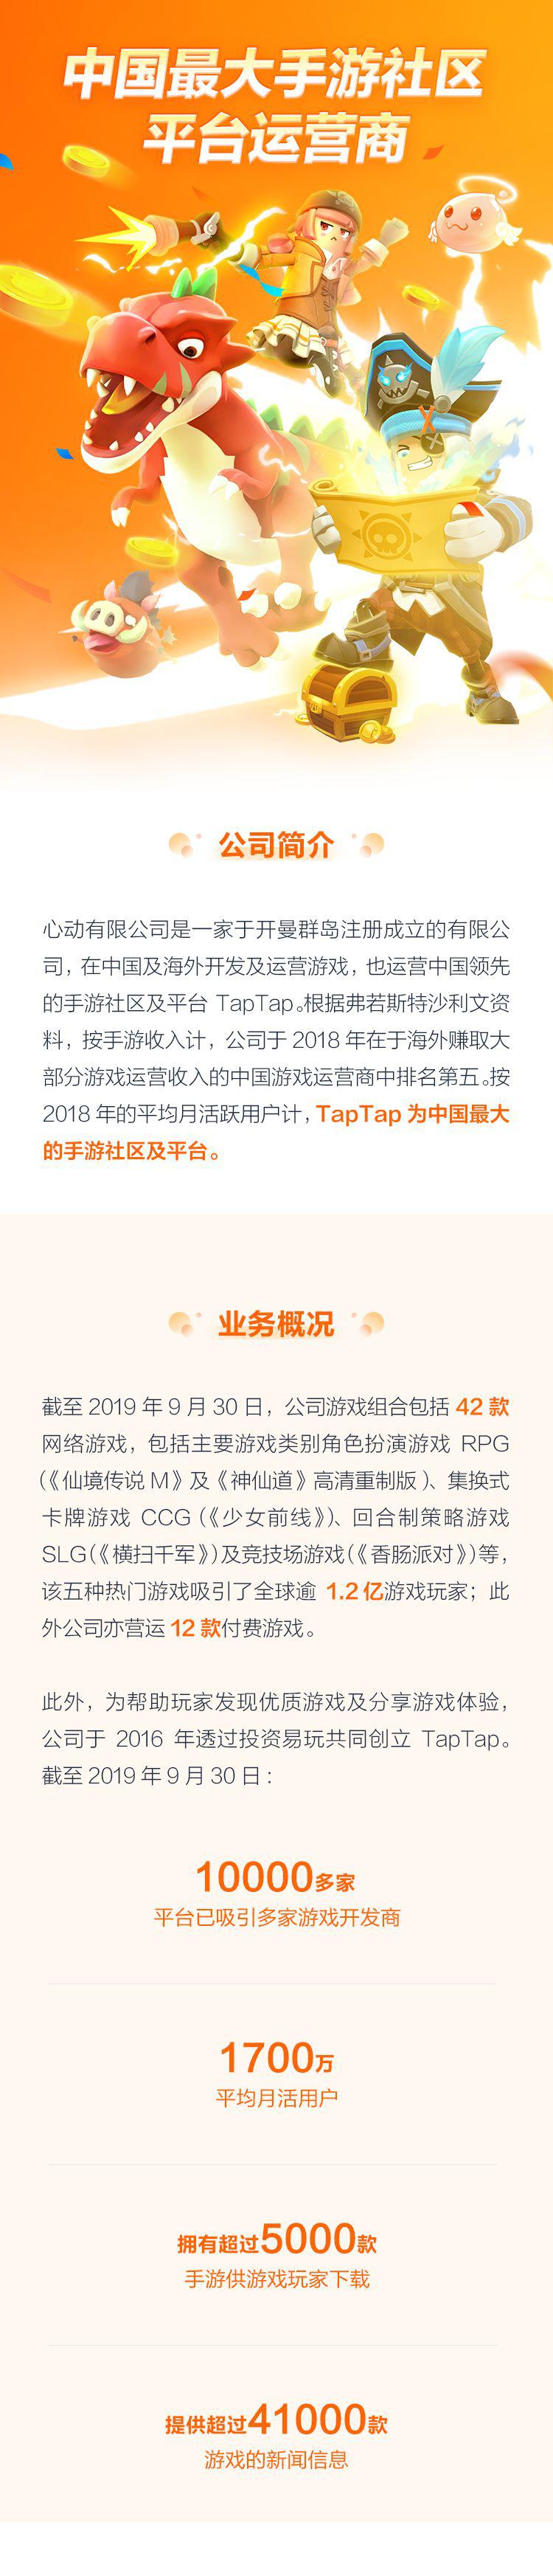 盘一盘中国最大手游社区平台运营商